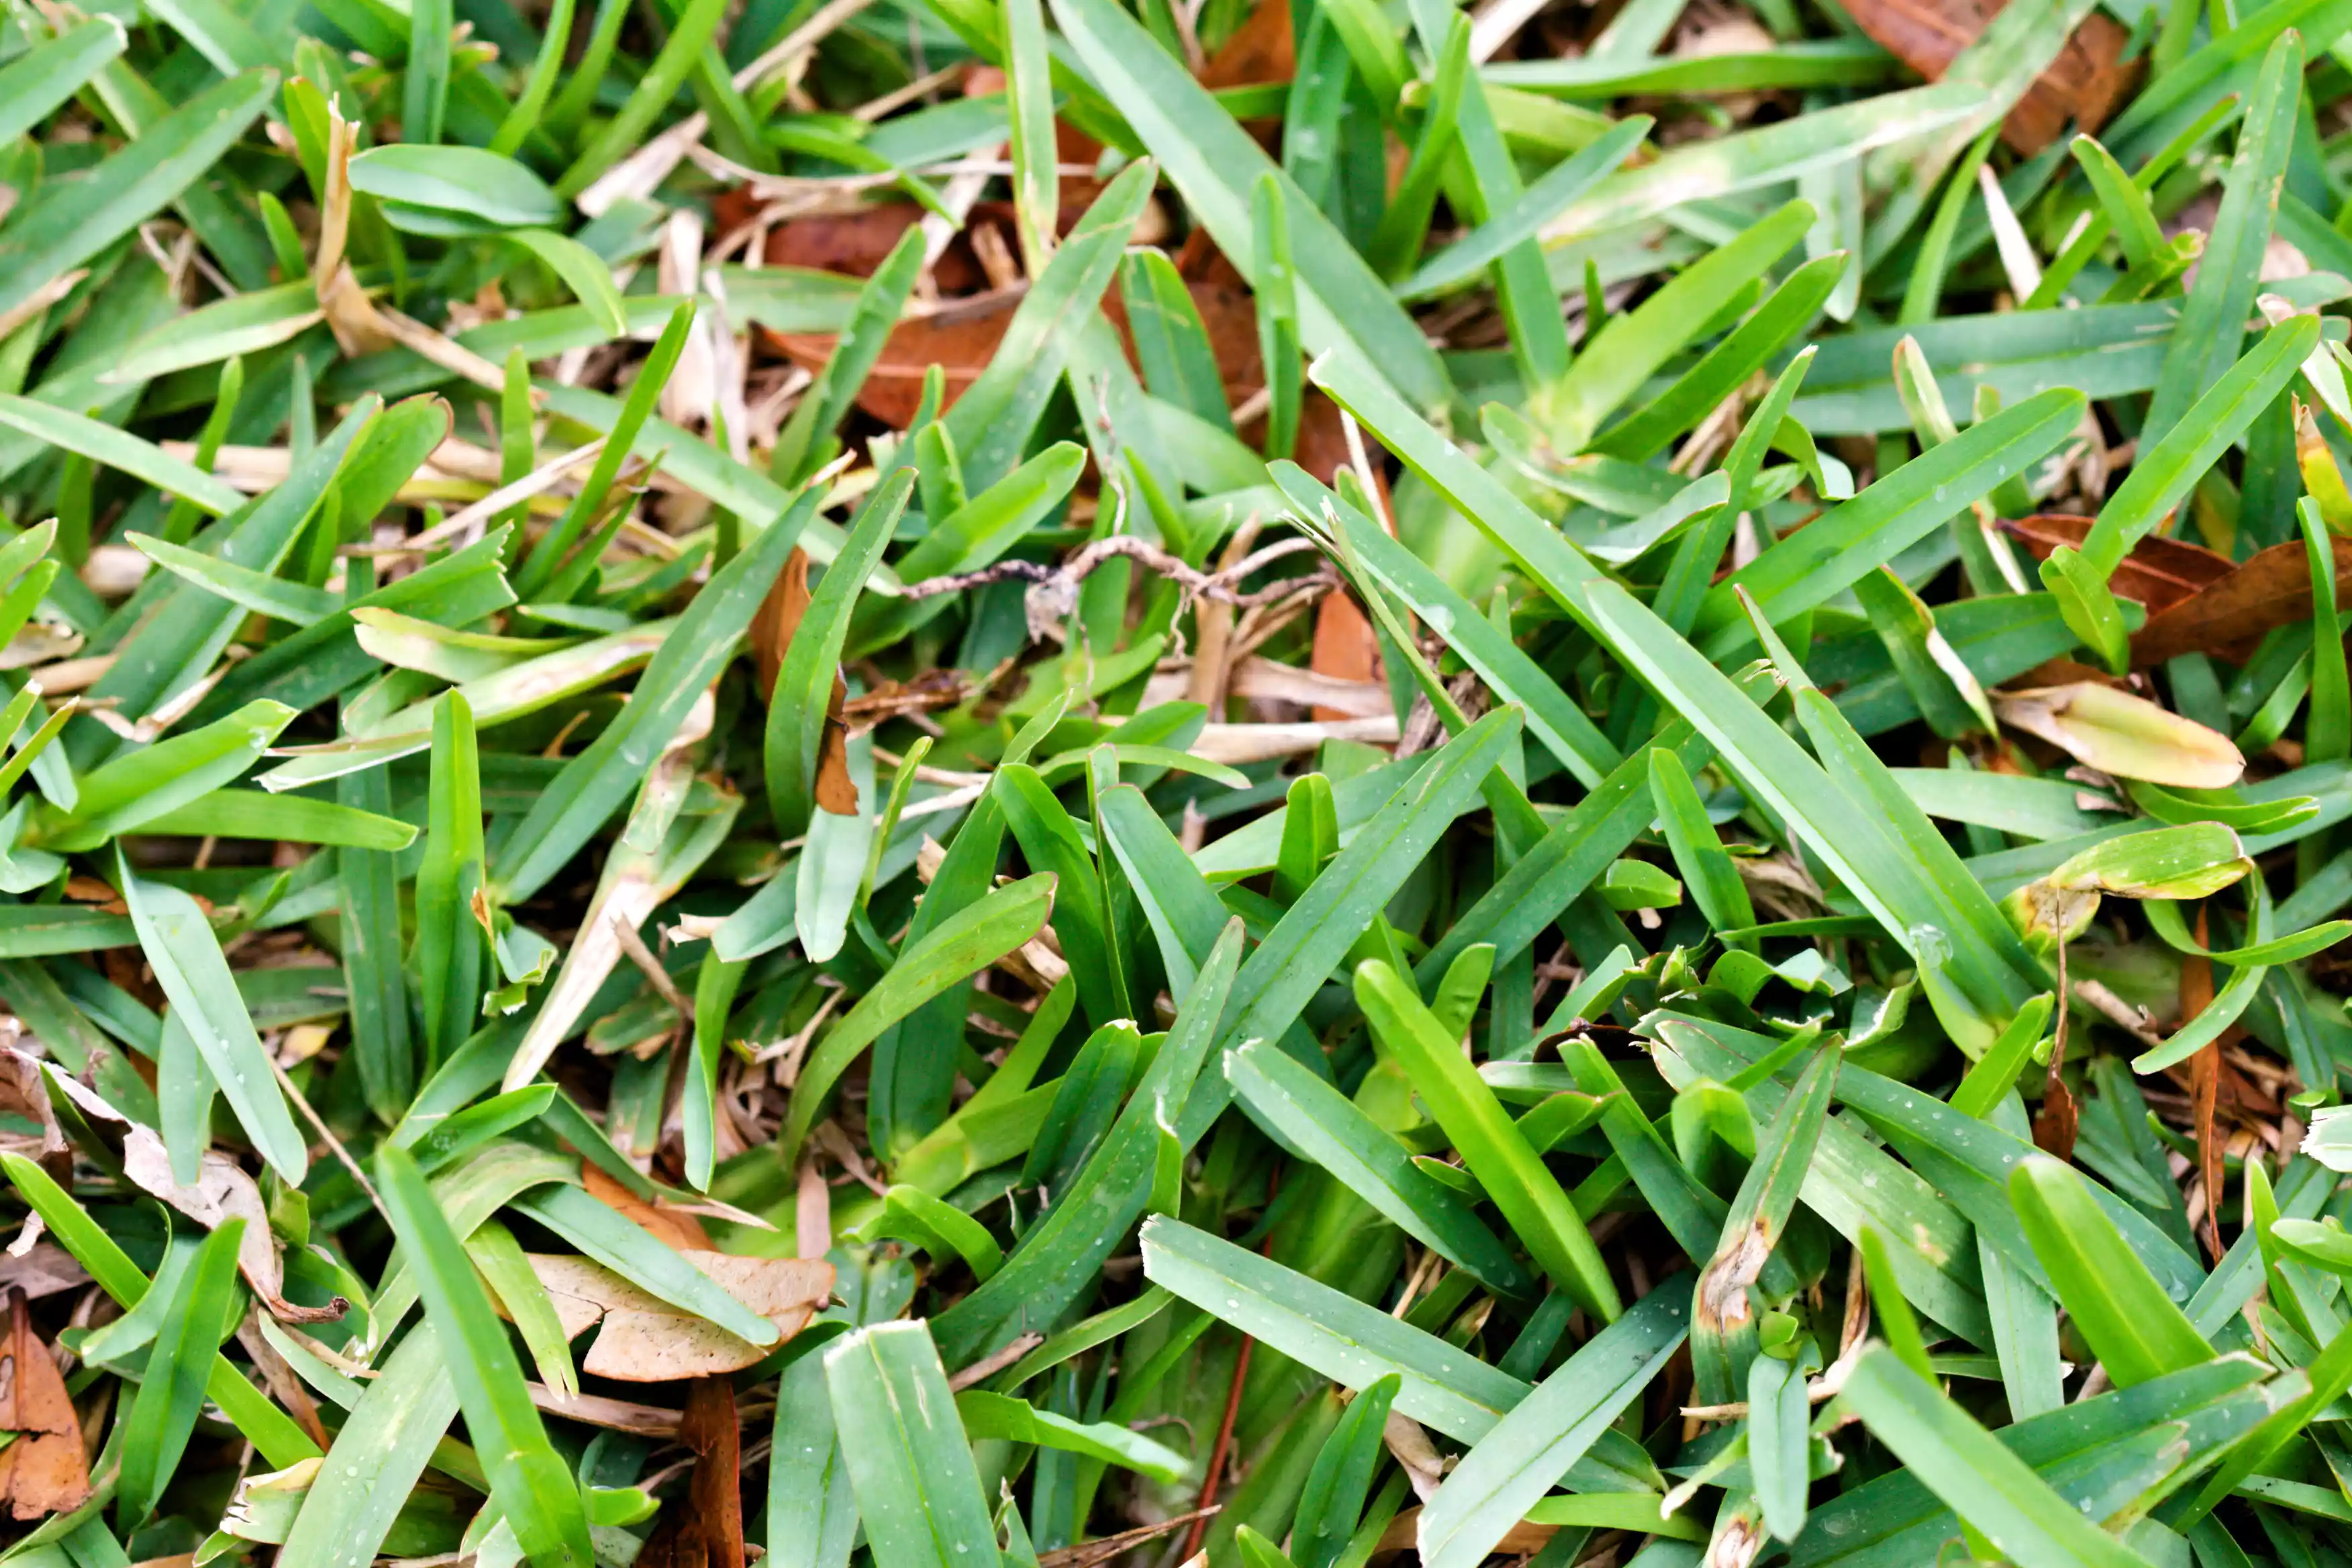 A close up shot of short, green grass